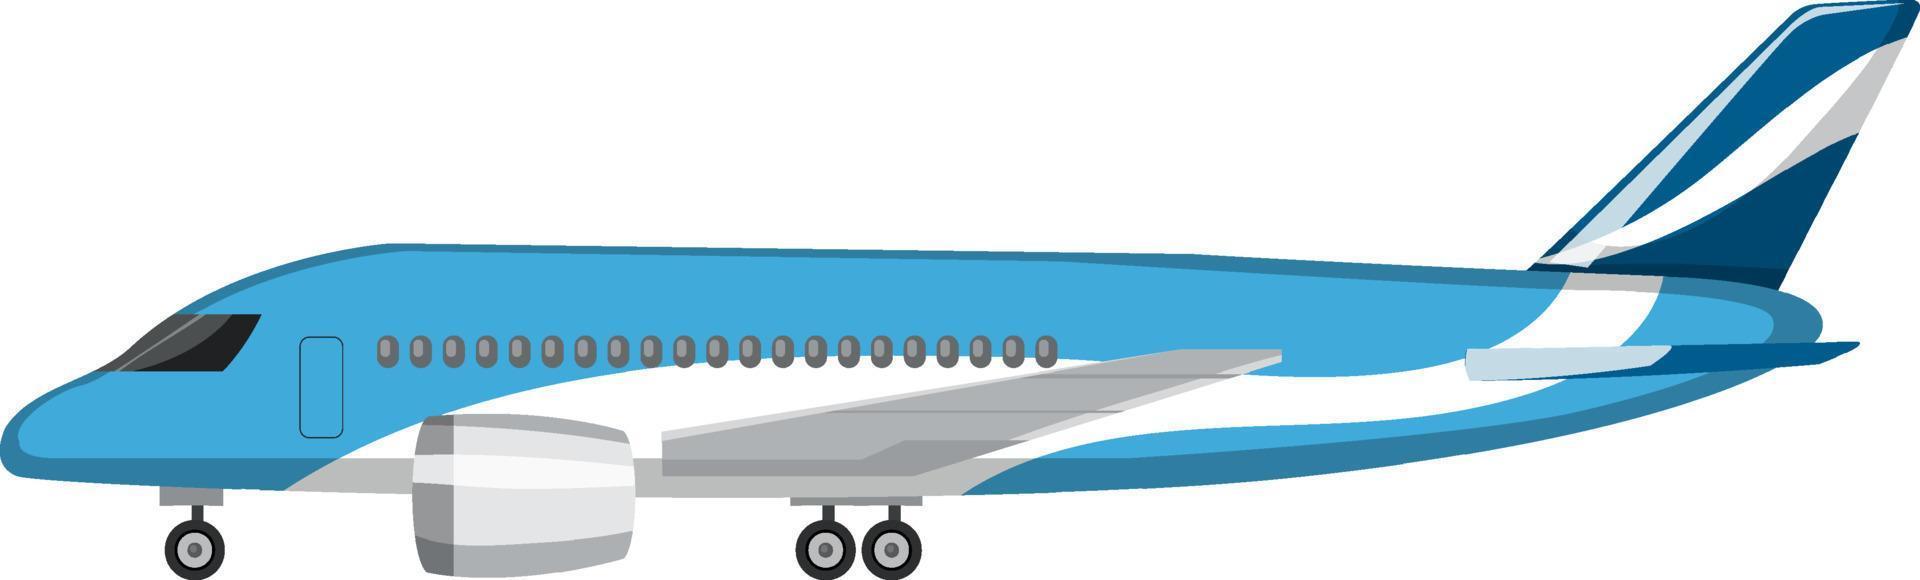 aereo in stile cartone animato su sfondo bianco vettore